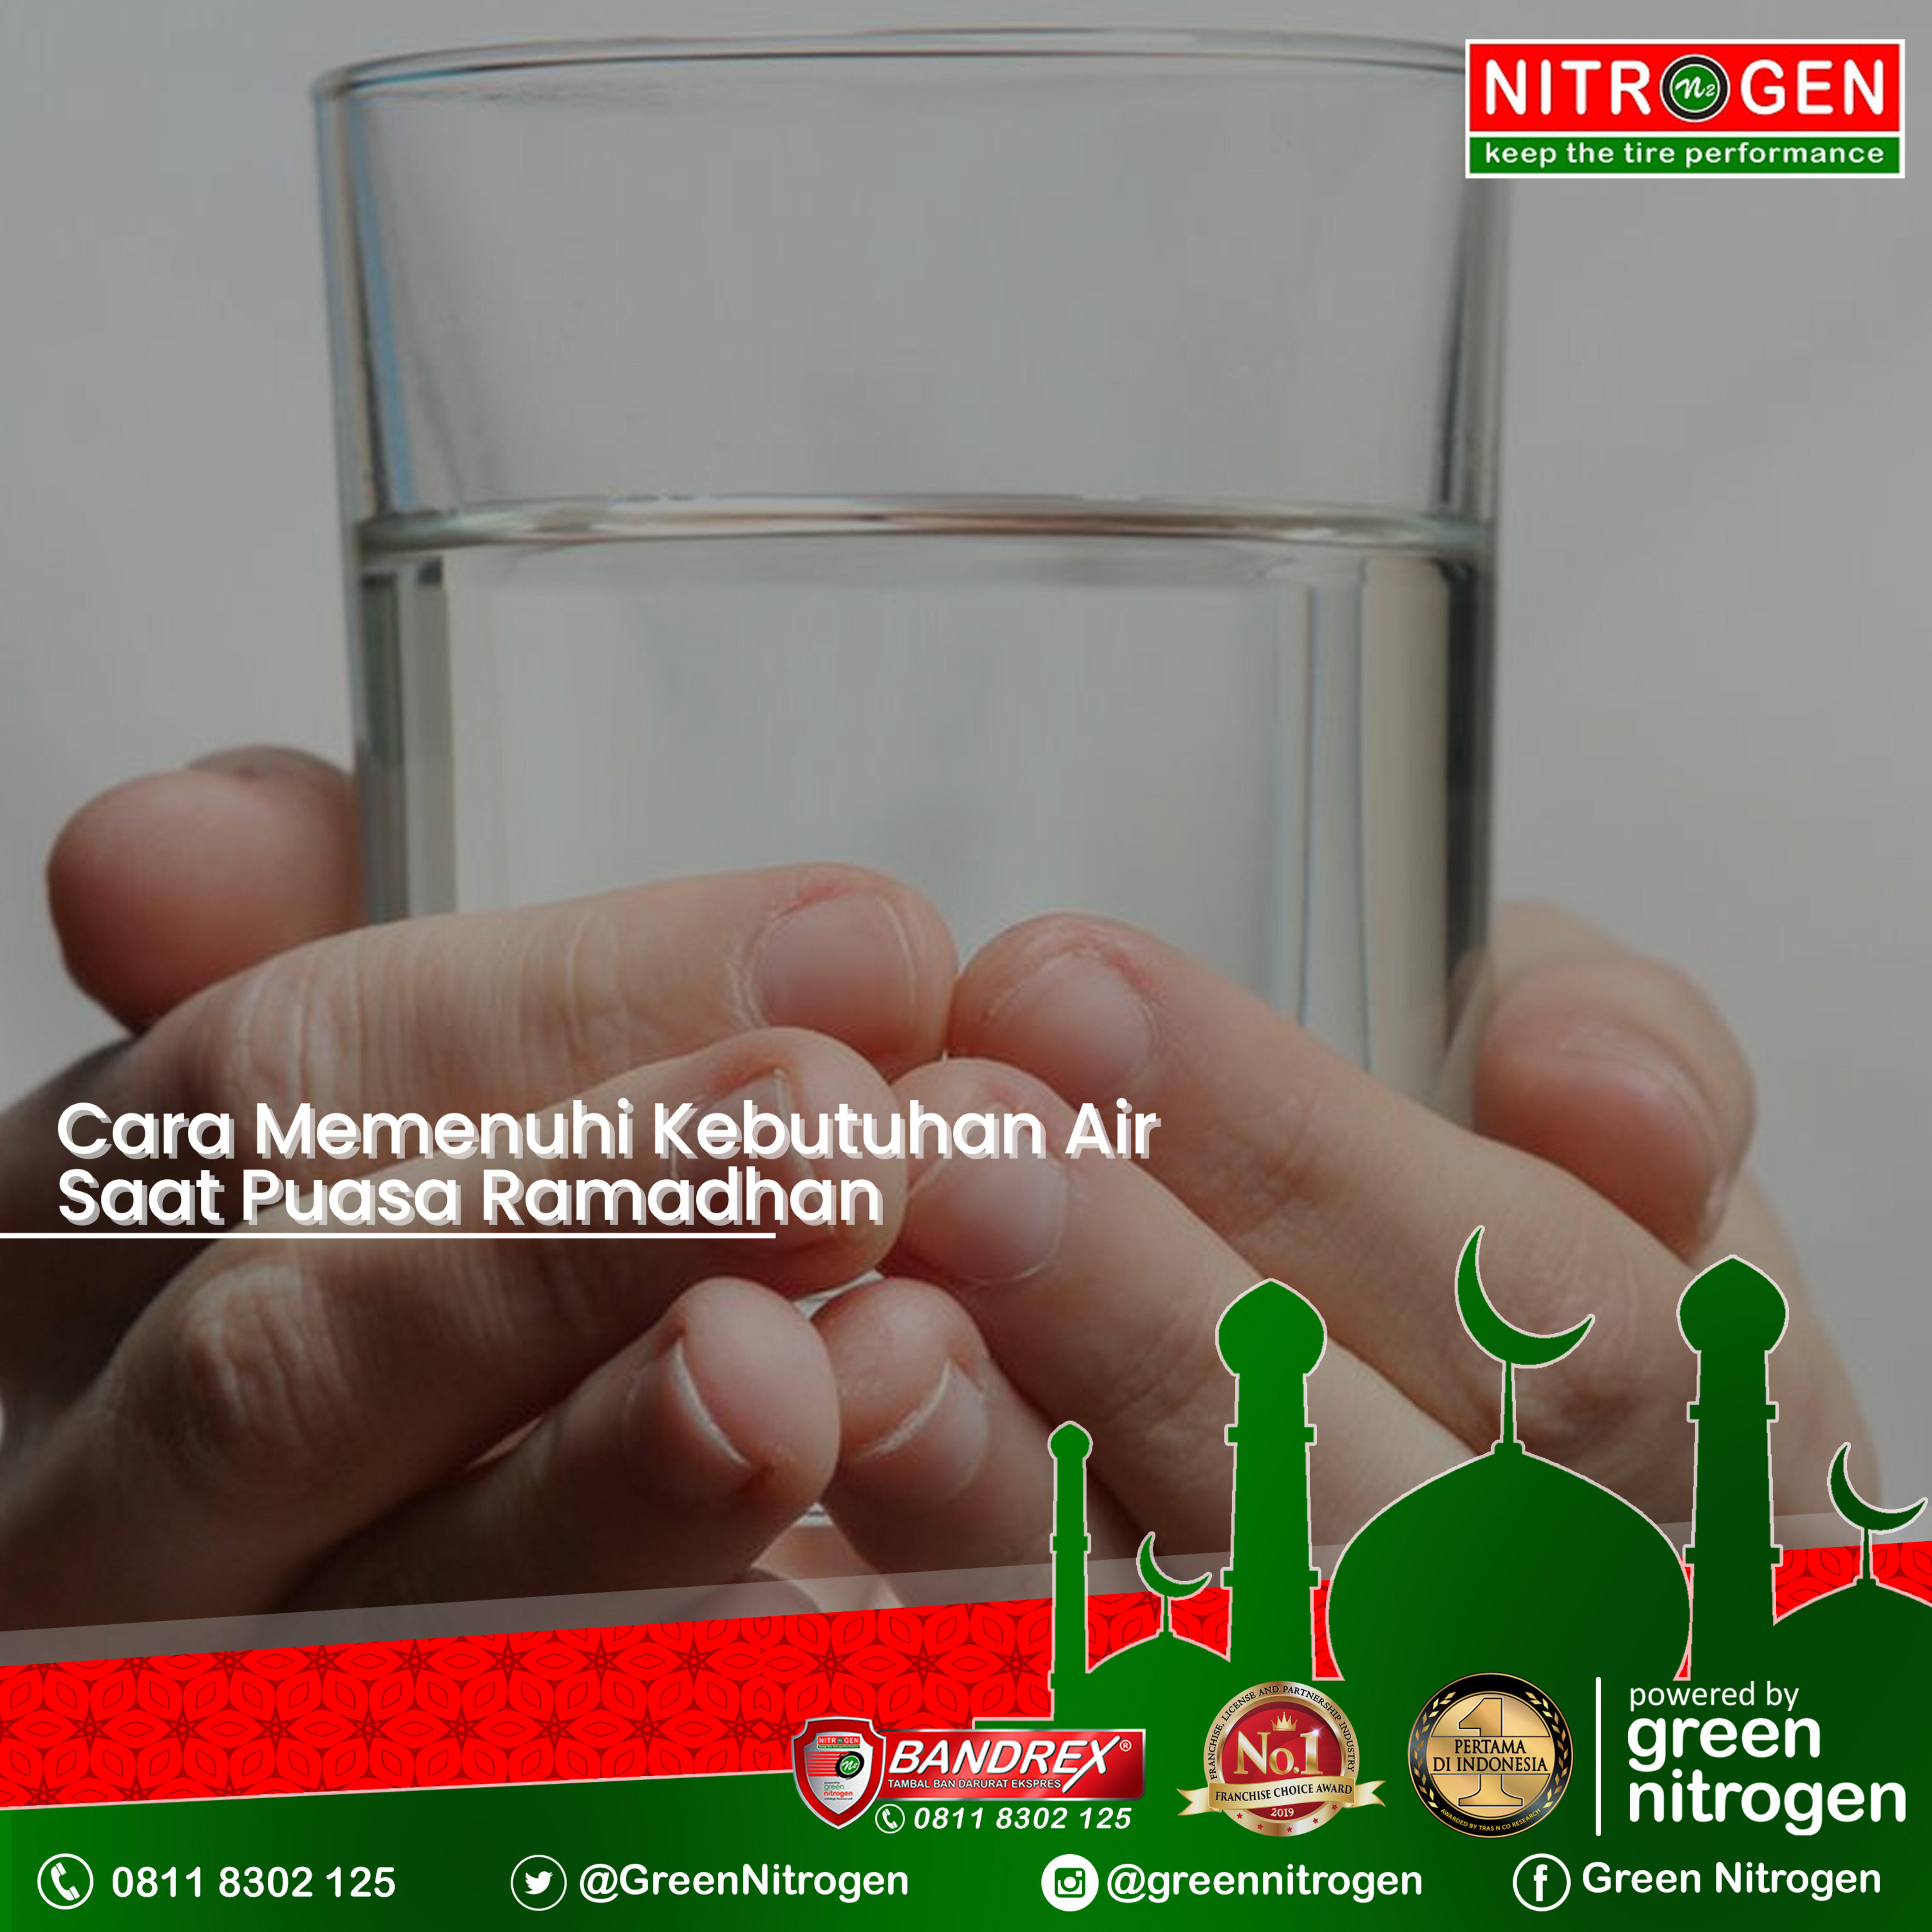 Cara Memenuhi Kebutuhan Air Mineral Saat Puasa Ramadhan